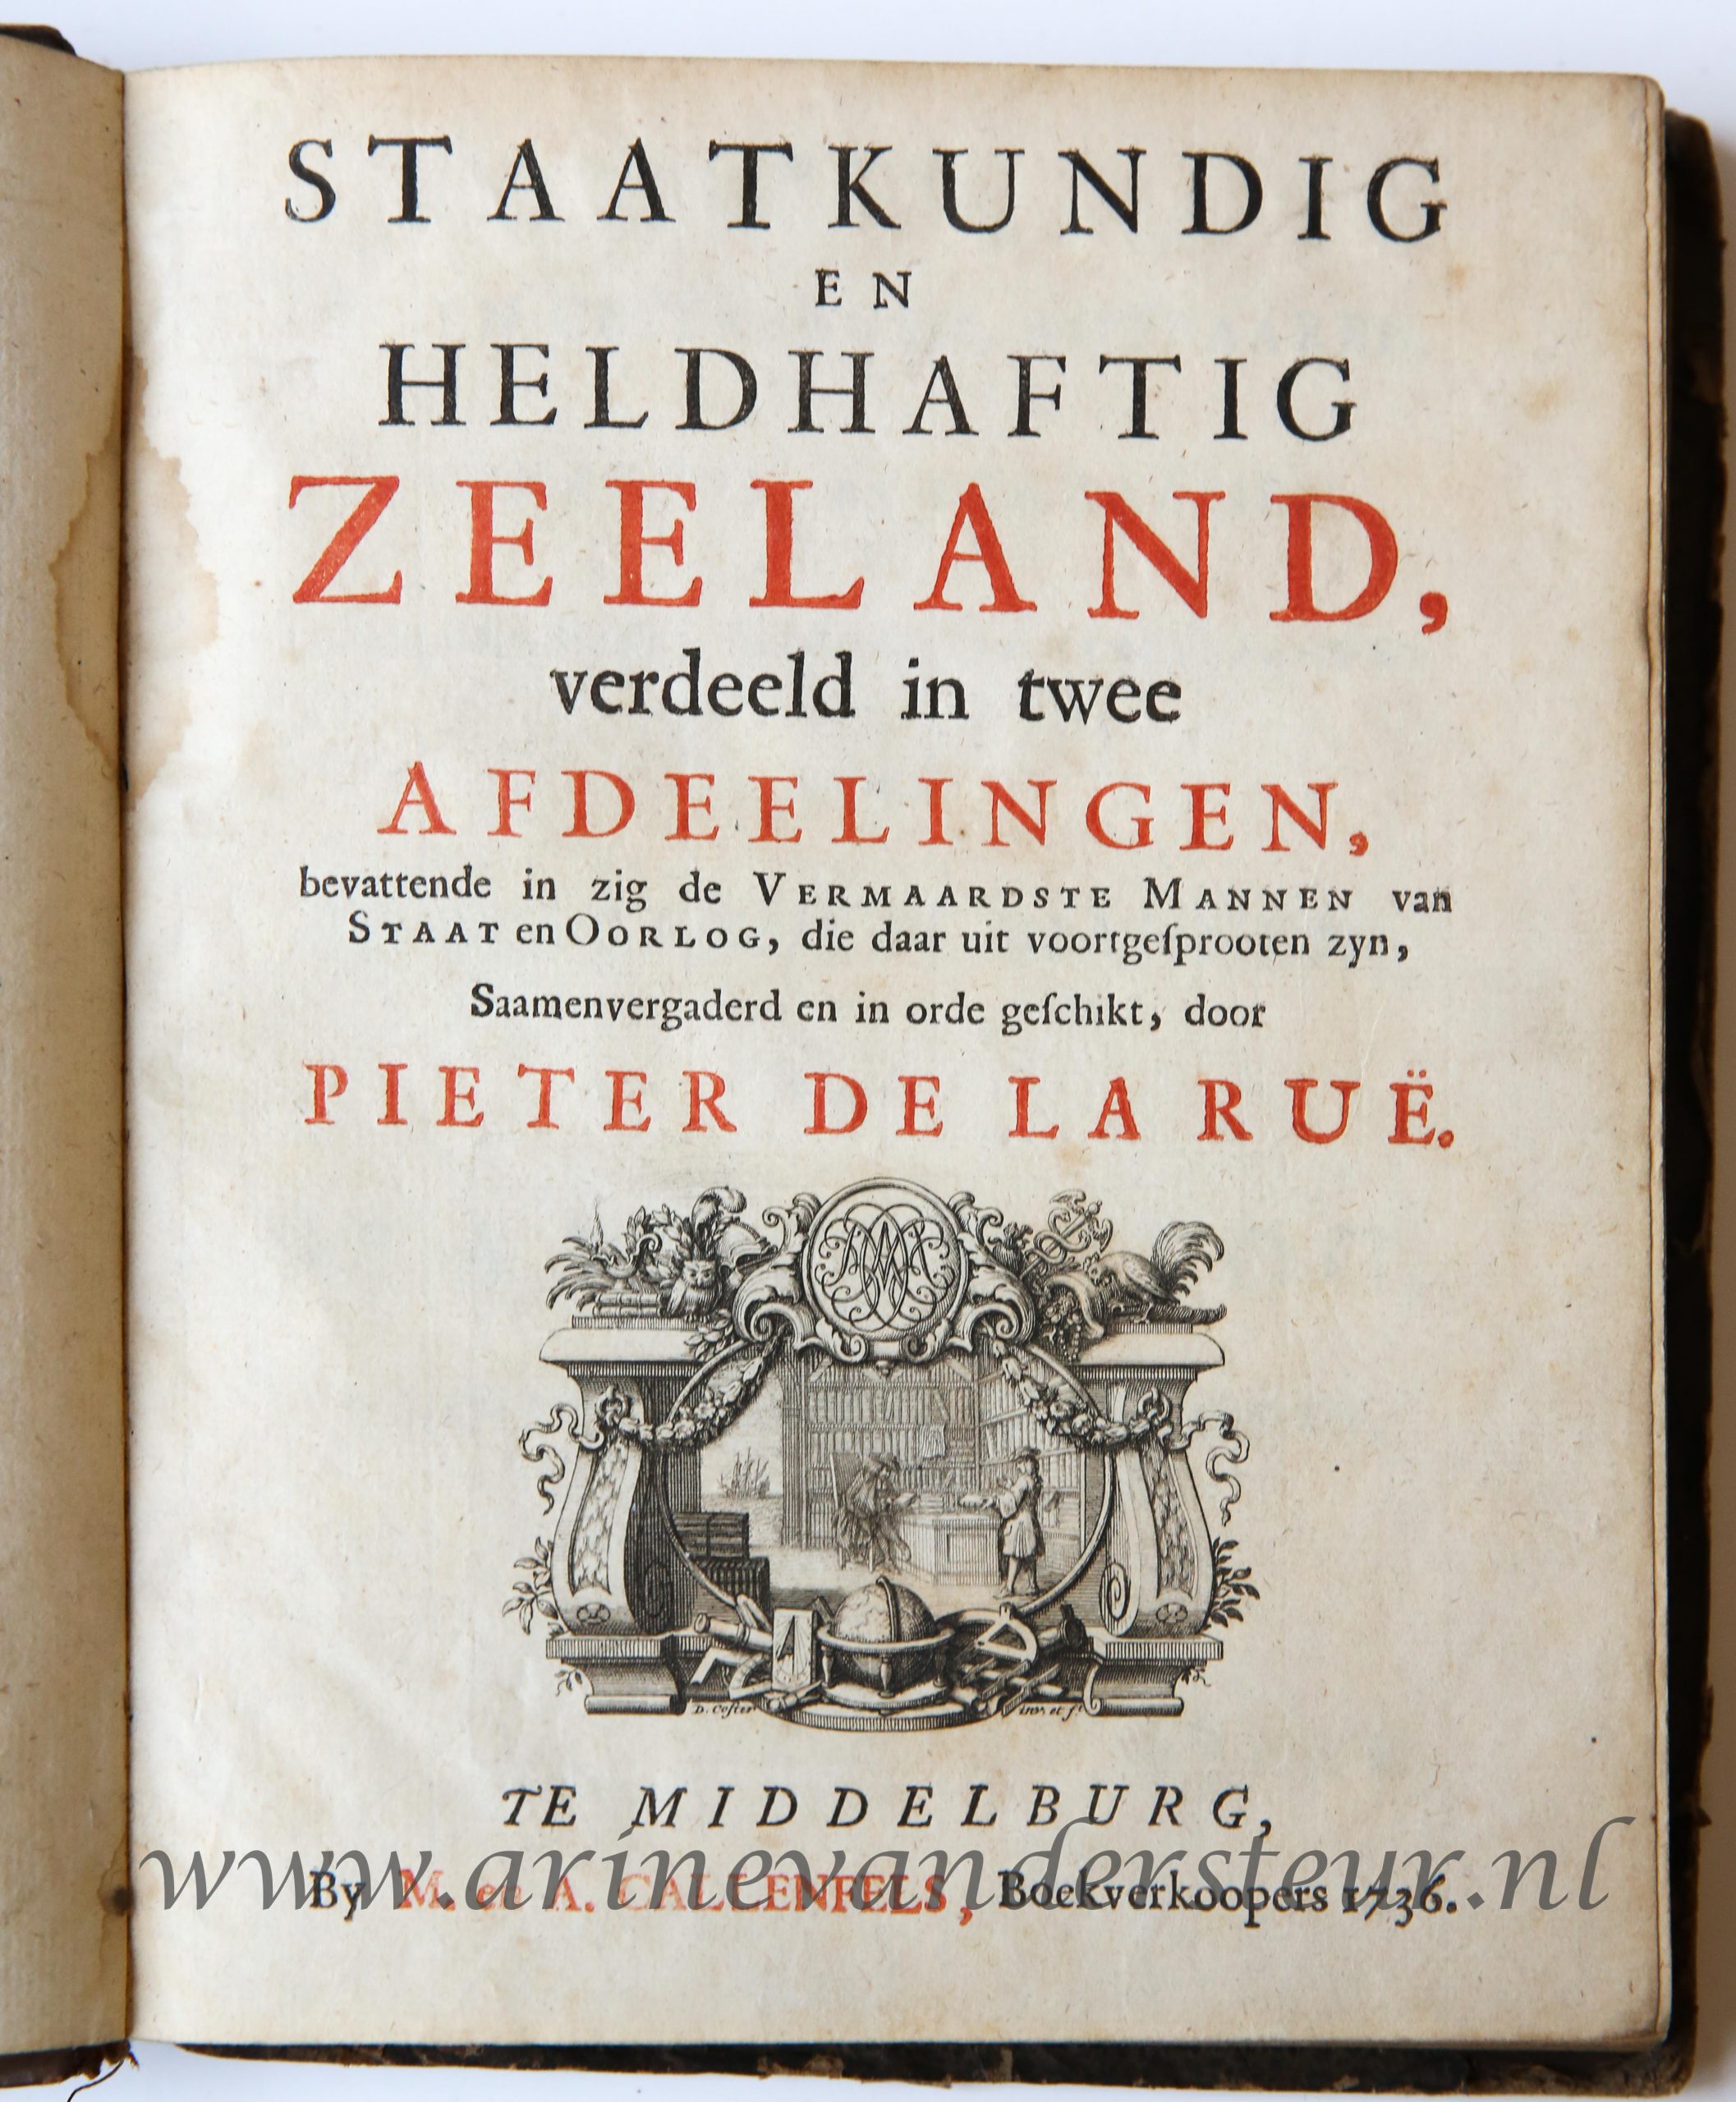 Staatkundig en heldhaftig Zeeland, verdeeld in twee afdeelingen. Middelburg, Callenfels, 1736, (10) + 274 + (4) pp. Text in Dutch.